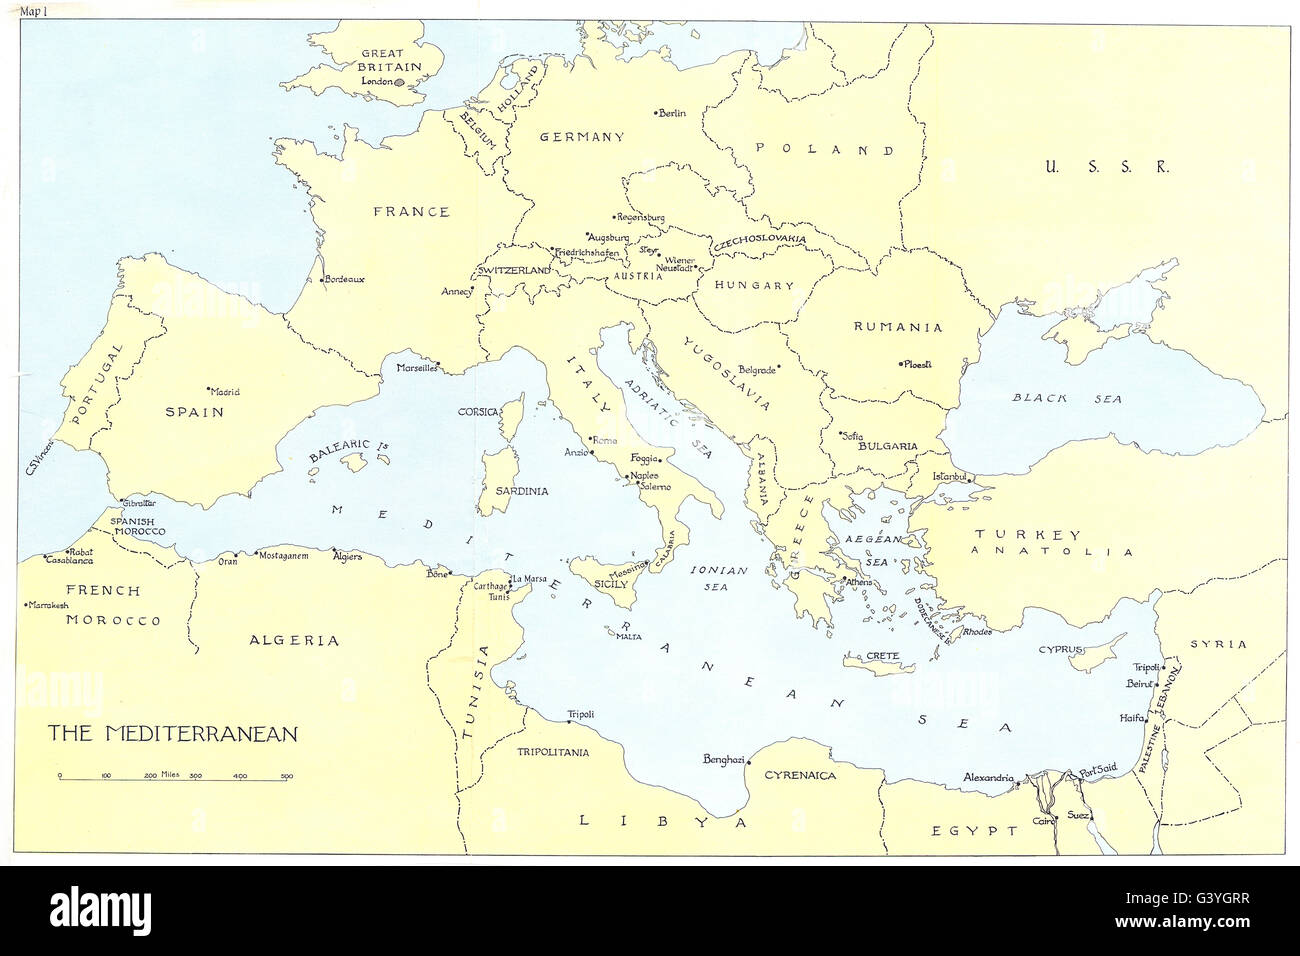 EUROPE: The Mediterranean. WW2, 1973 vintage map Stock Photo